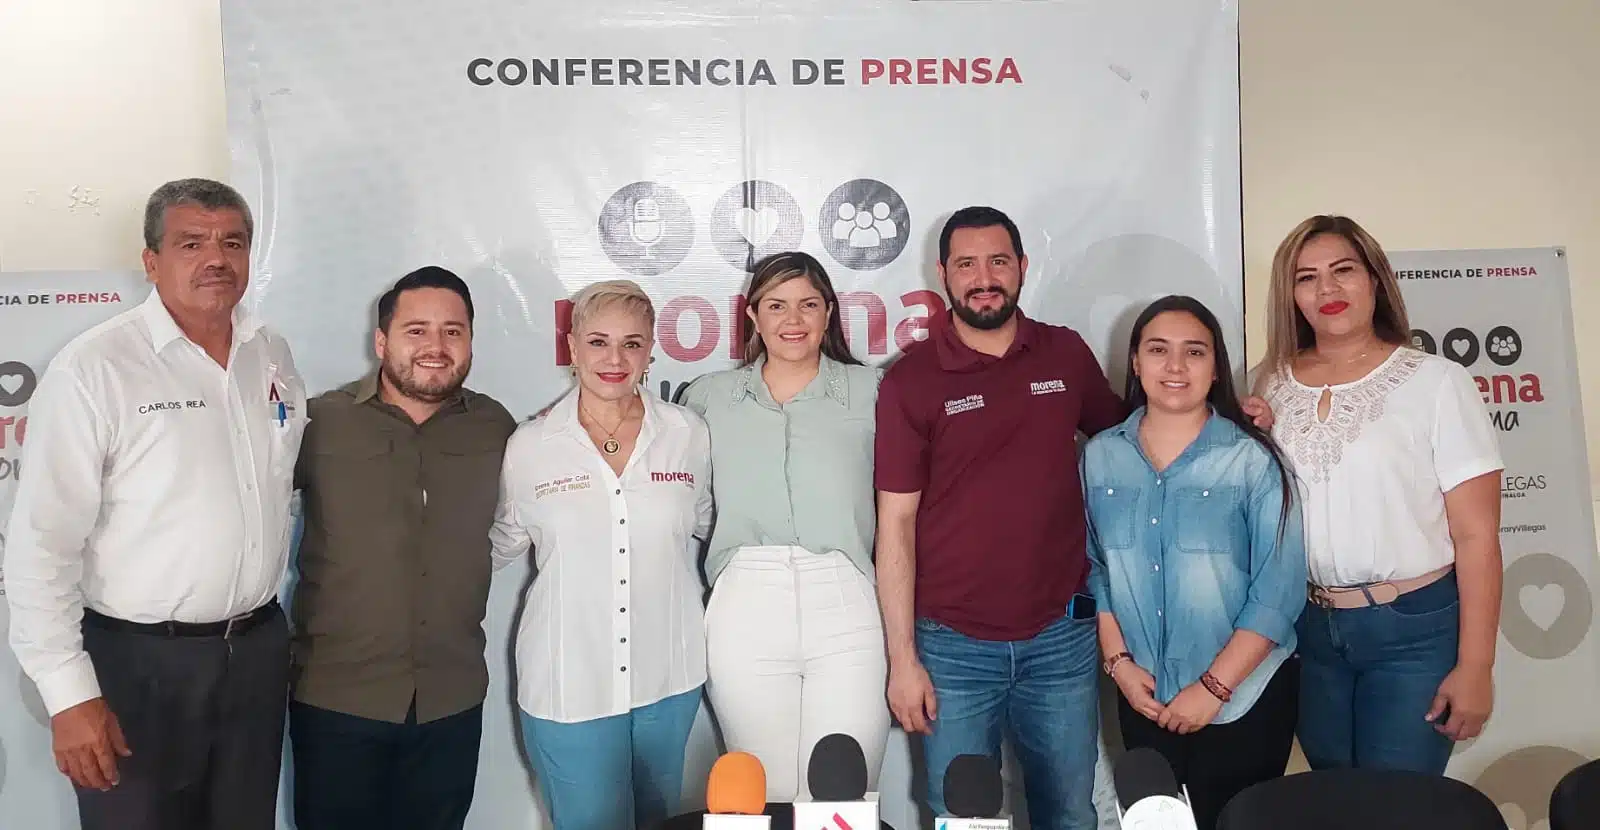 Conferencia de prensa del Movimiento Regeneración Nacional (Morena) en Sinaloa